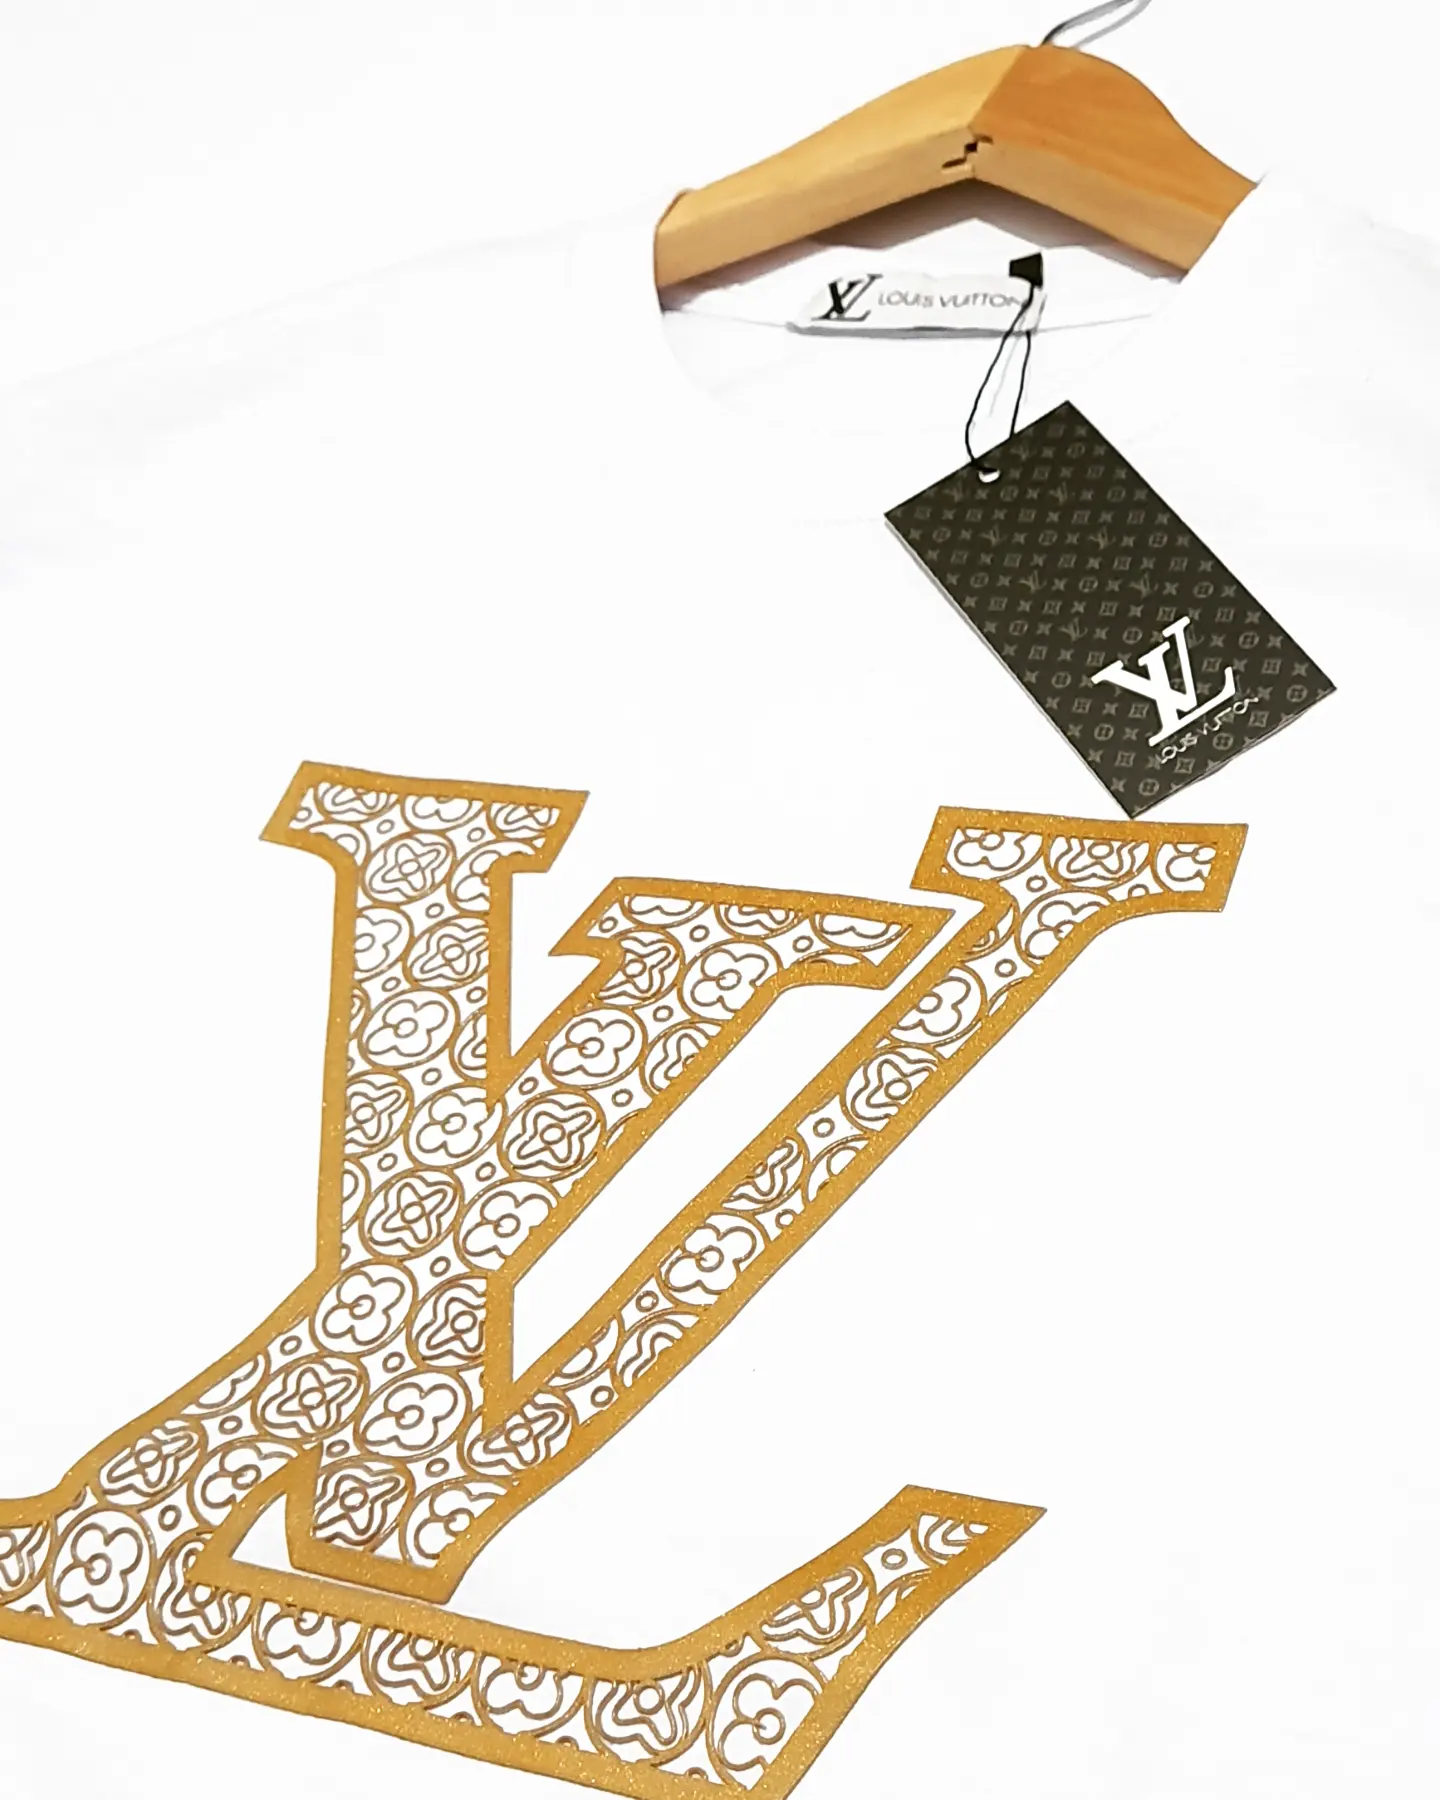 Camiseta Louis Vuitton Preta